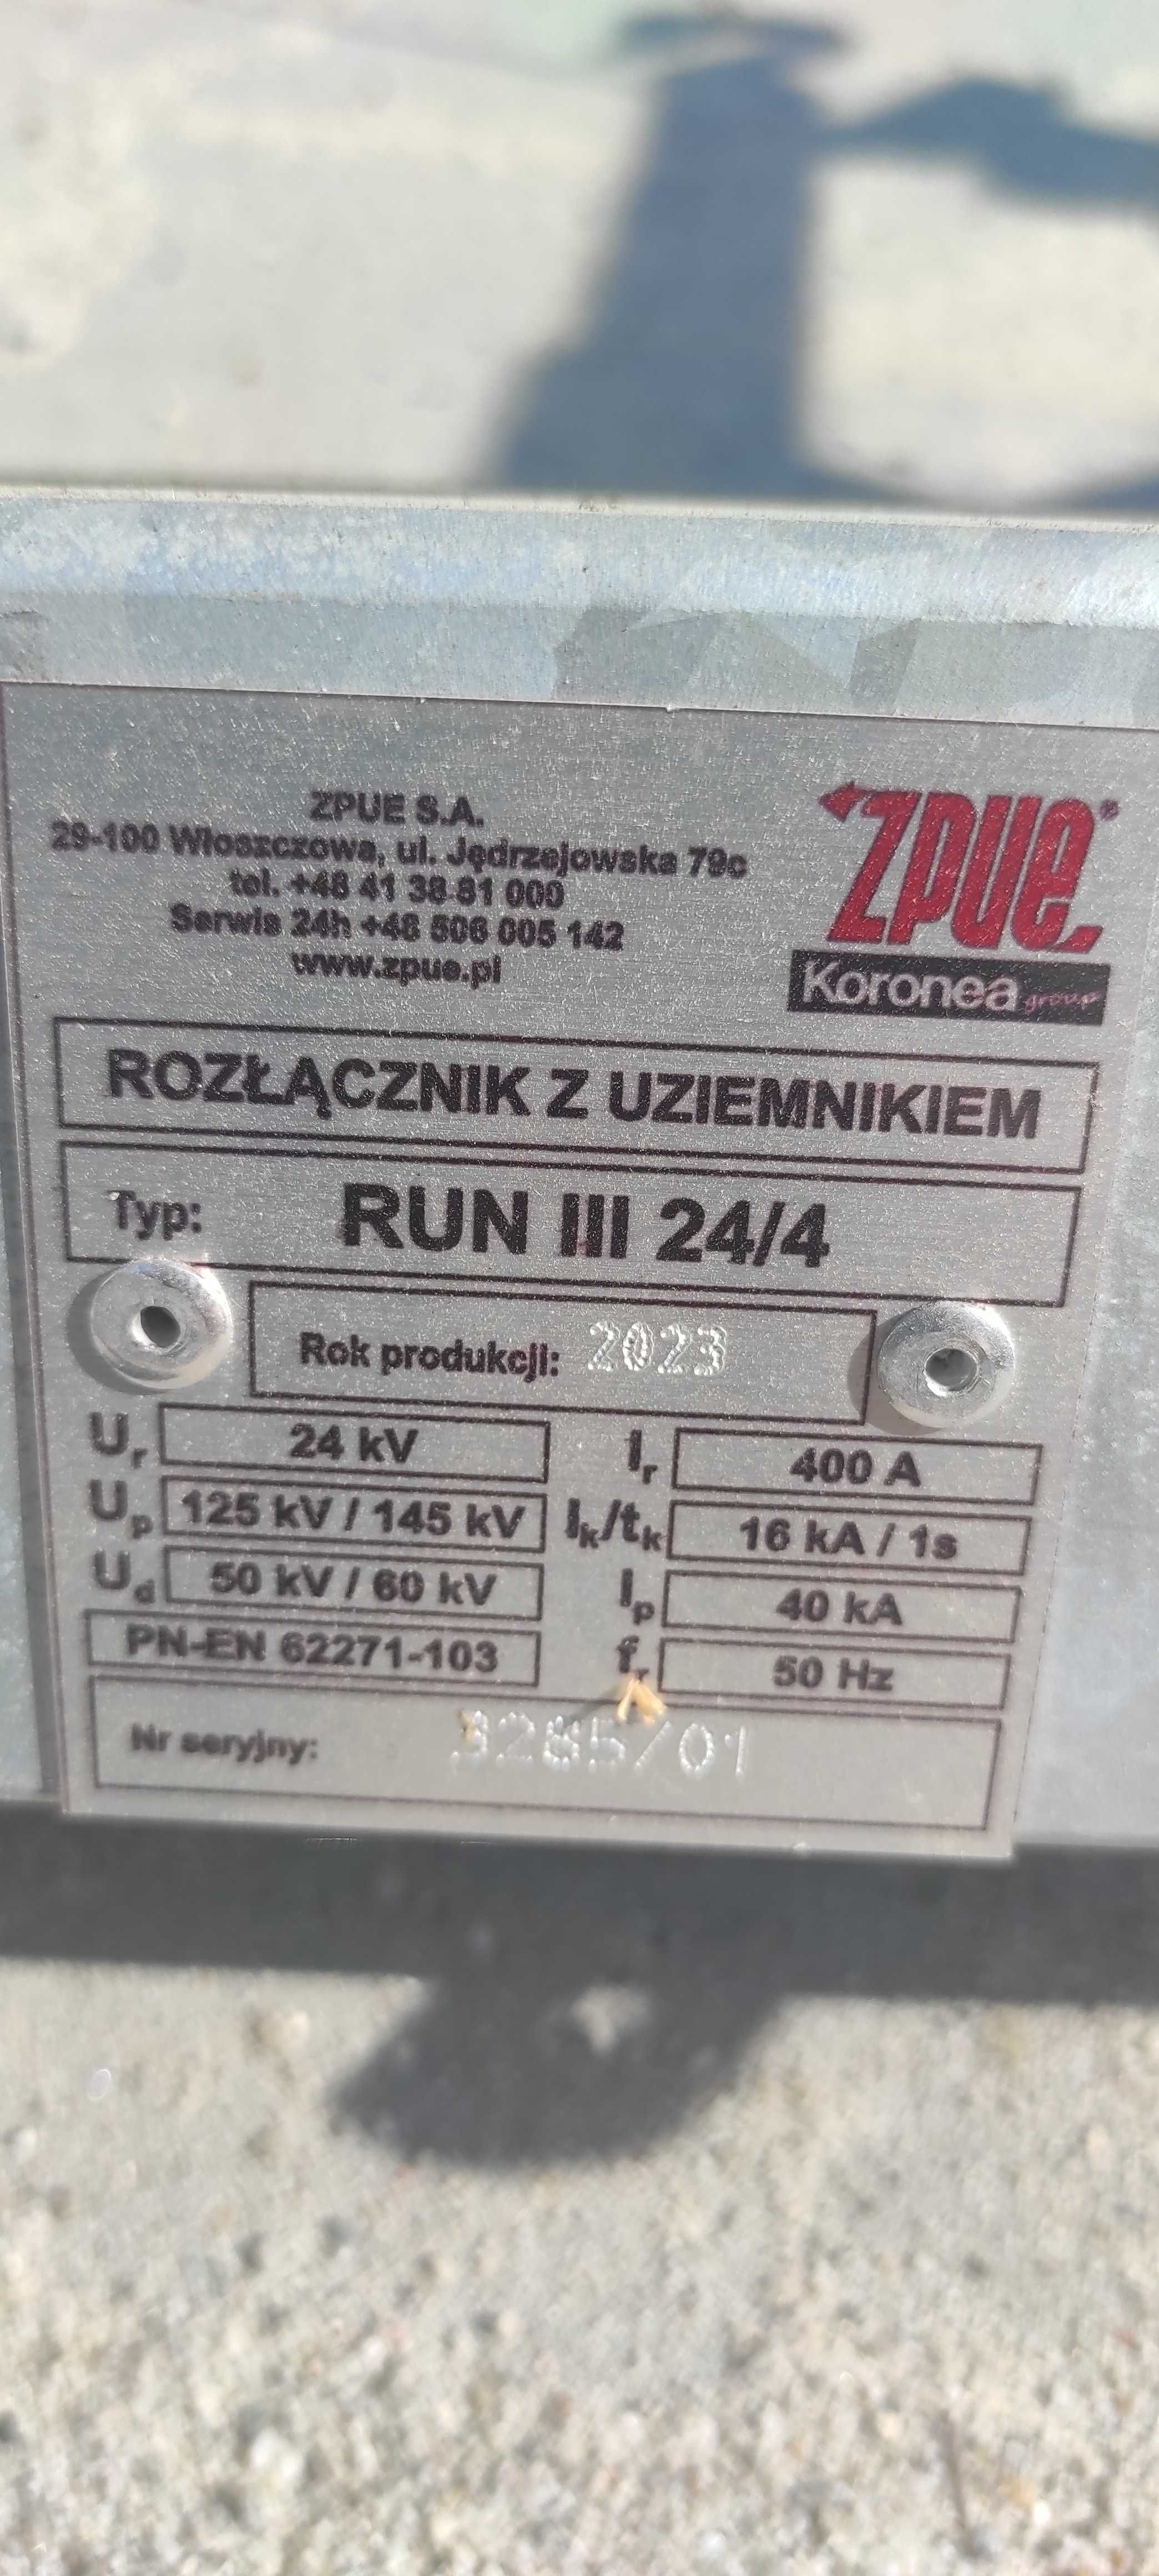 Rozłącznik z Uziemnikiem ZPUE Włoszczowa RUN III 24/4 W